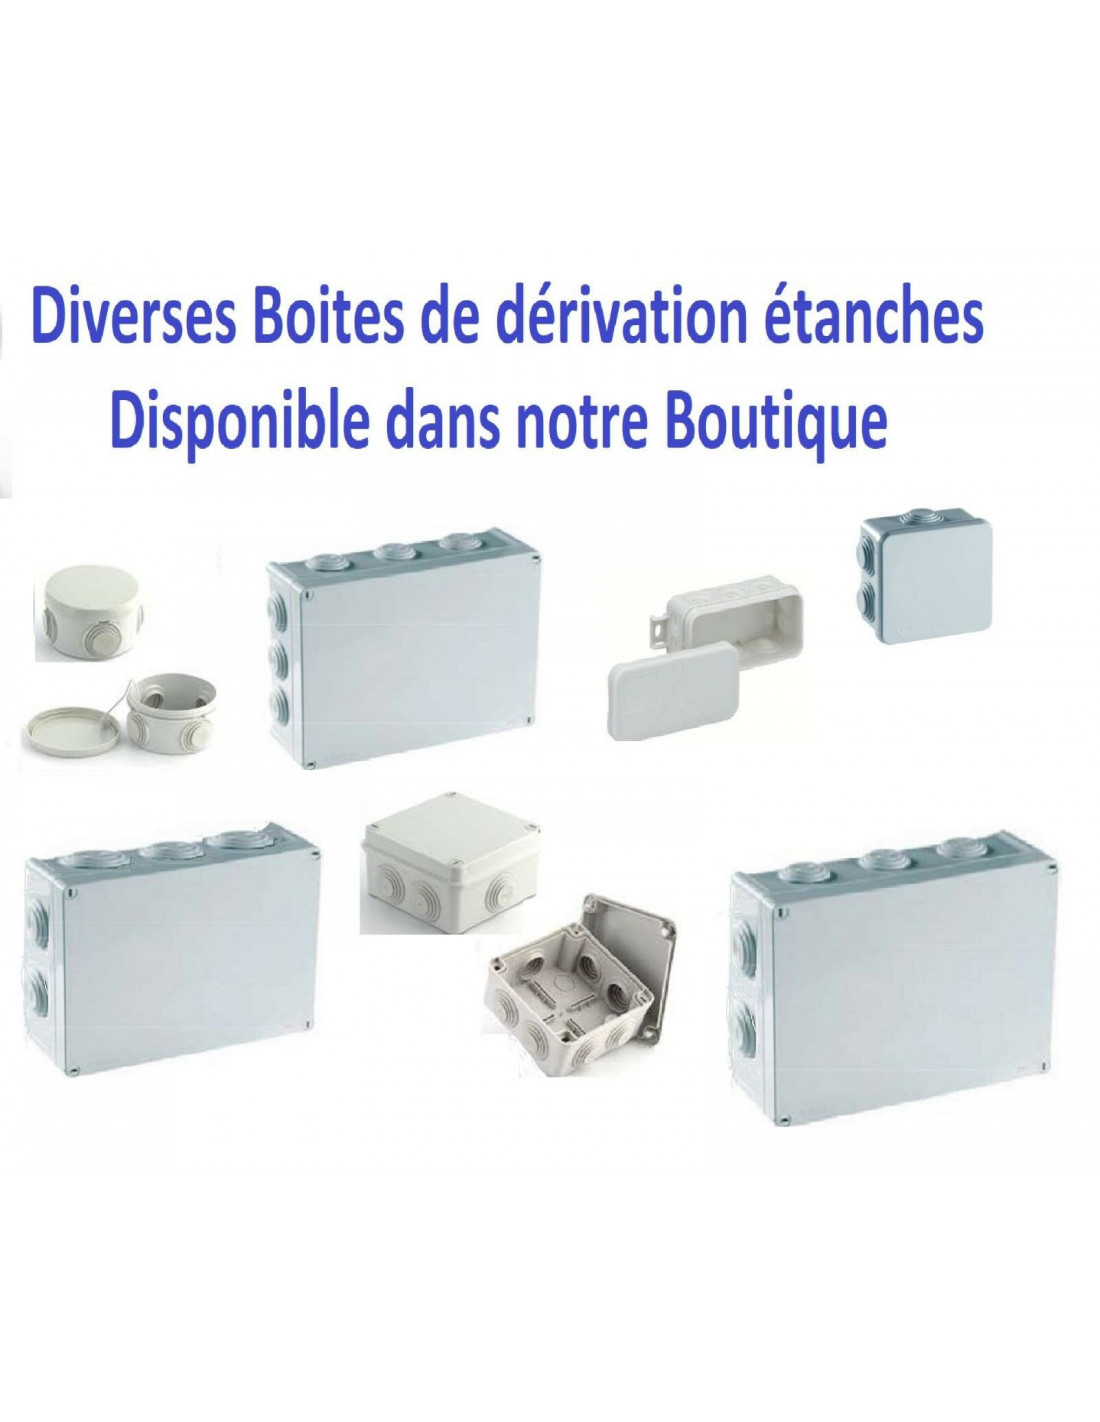 Boite de dérivation étanche 90 x 43 x 40 mm type mini boite de derivation